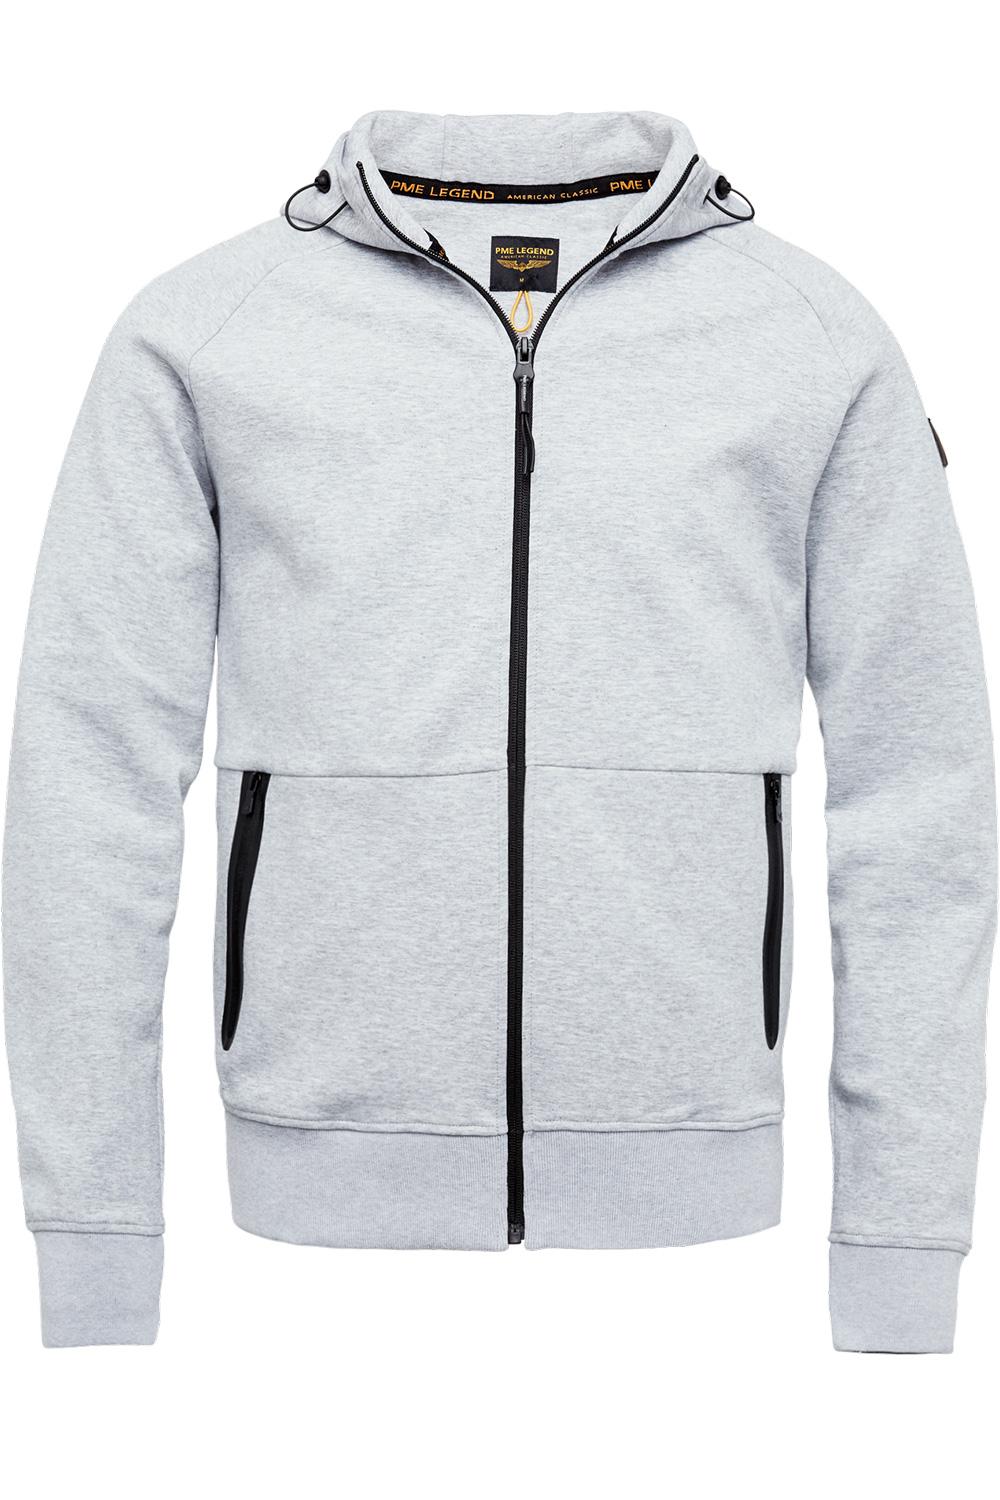 interlock sweater zip jacket psw2202426 pme vest 960